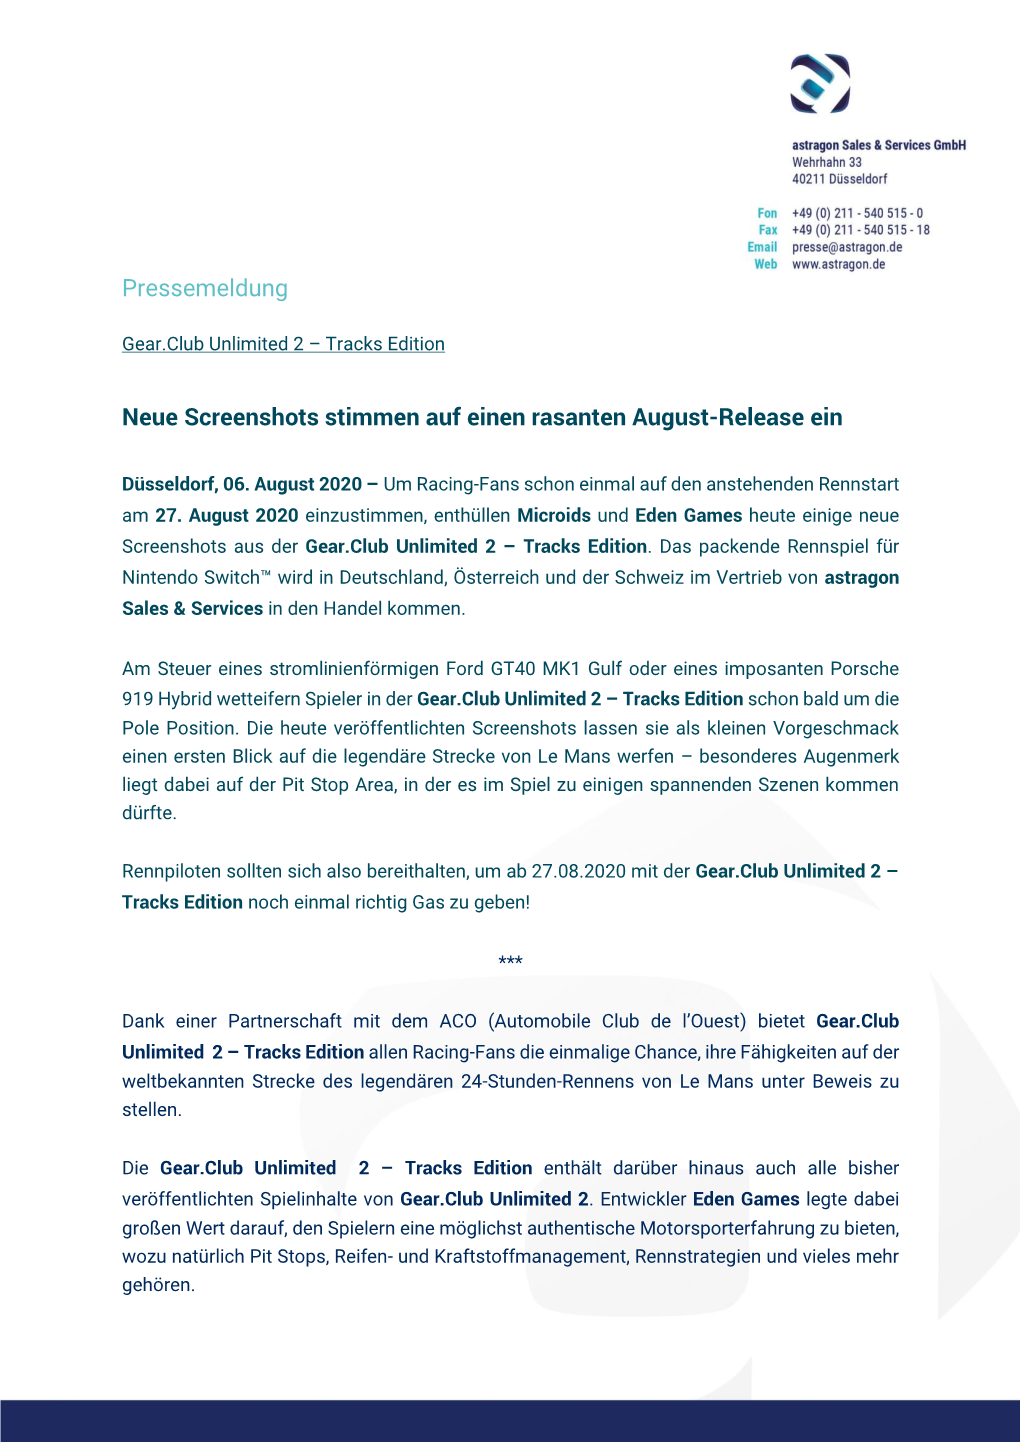 Pressemeldung Neue Screenshots Stimmen Auf Einen Rasanten August-Release